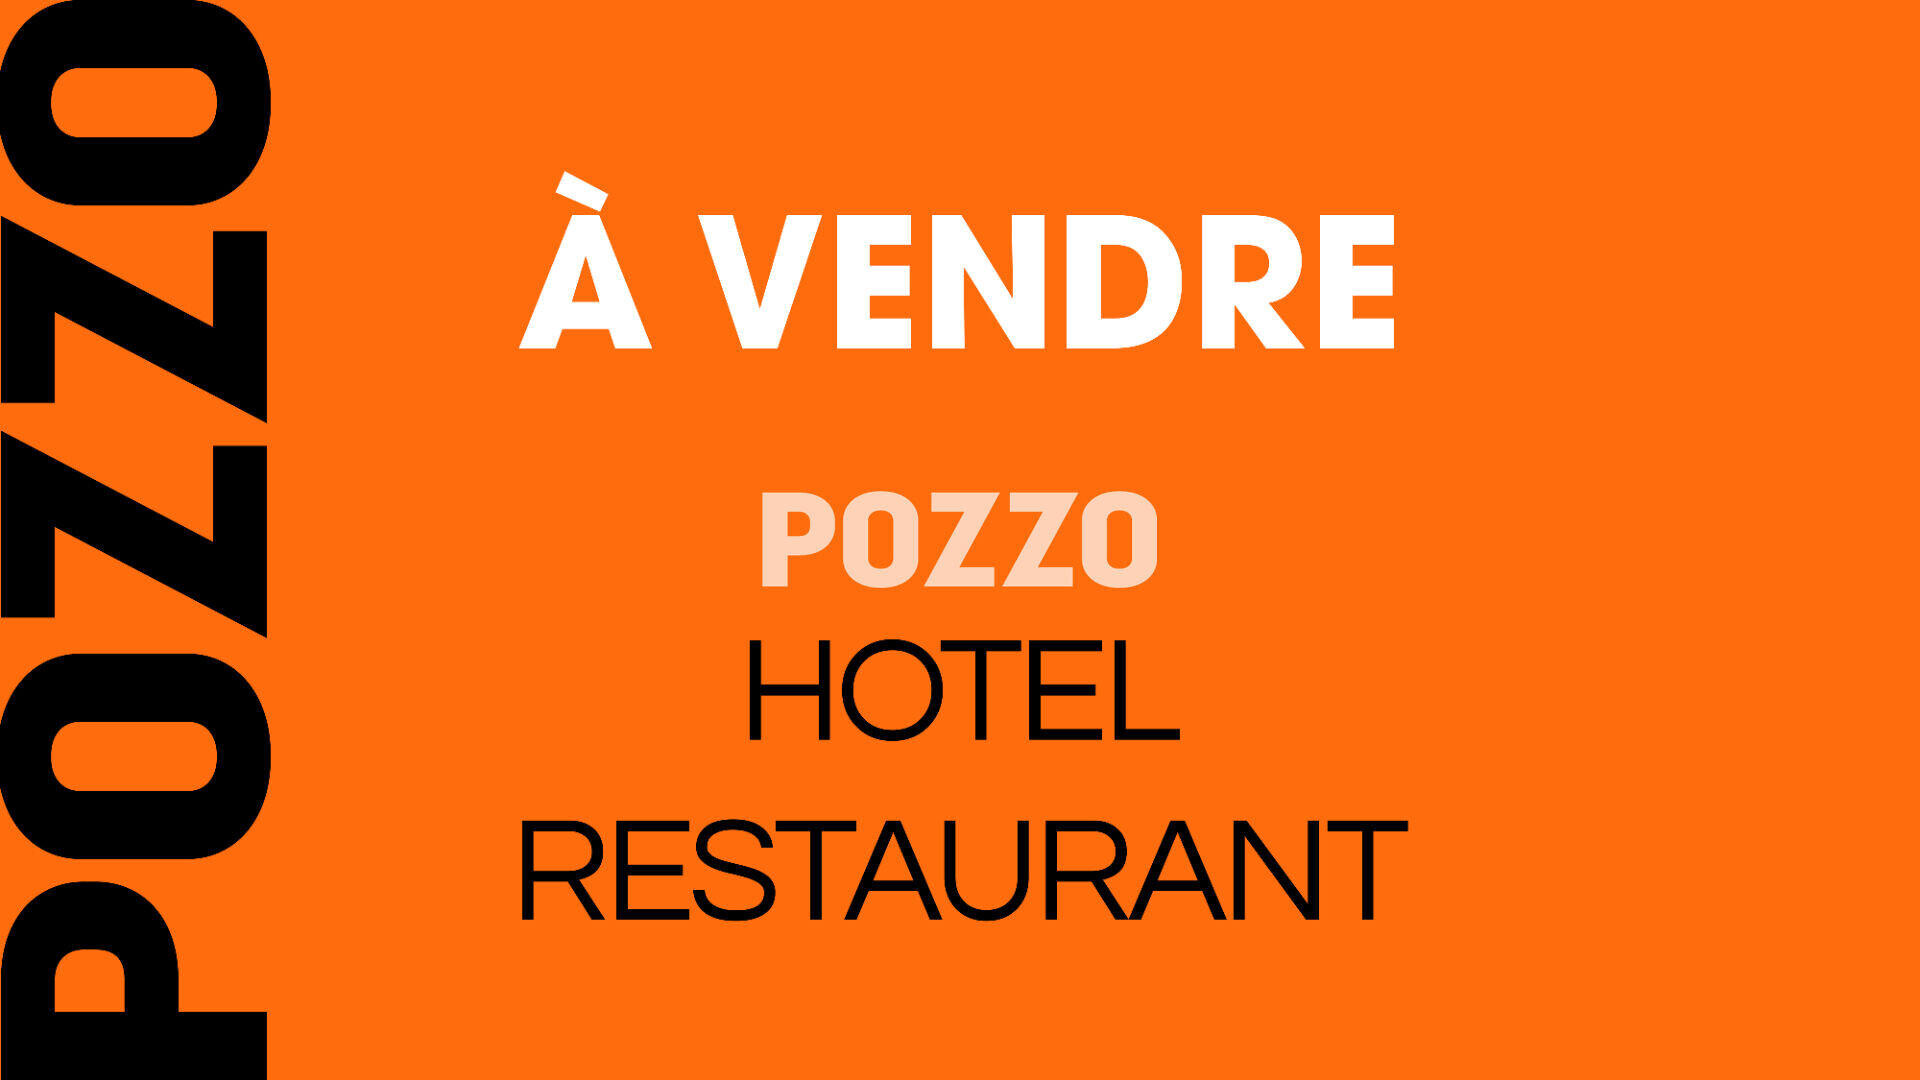 A vendre hôtel restaurant licence IV Côte de Nacre